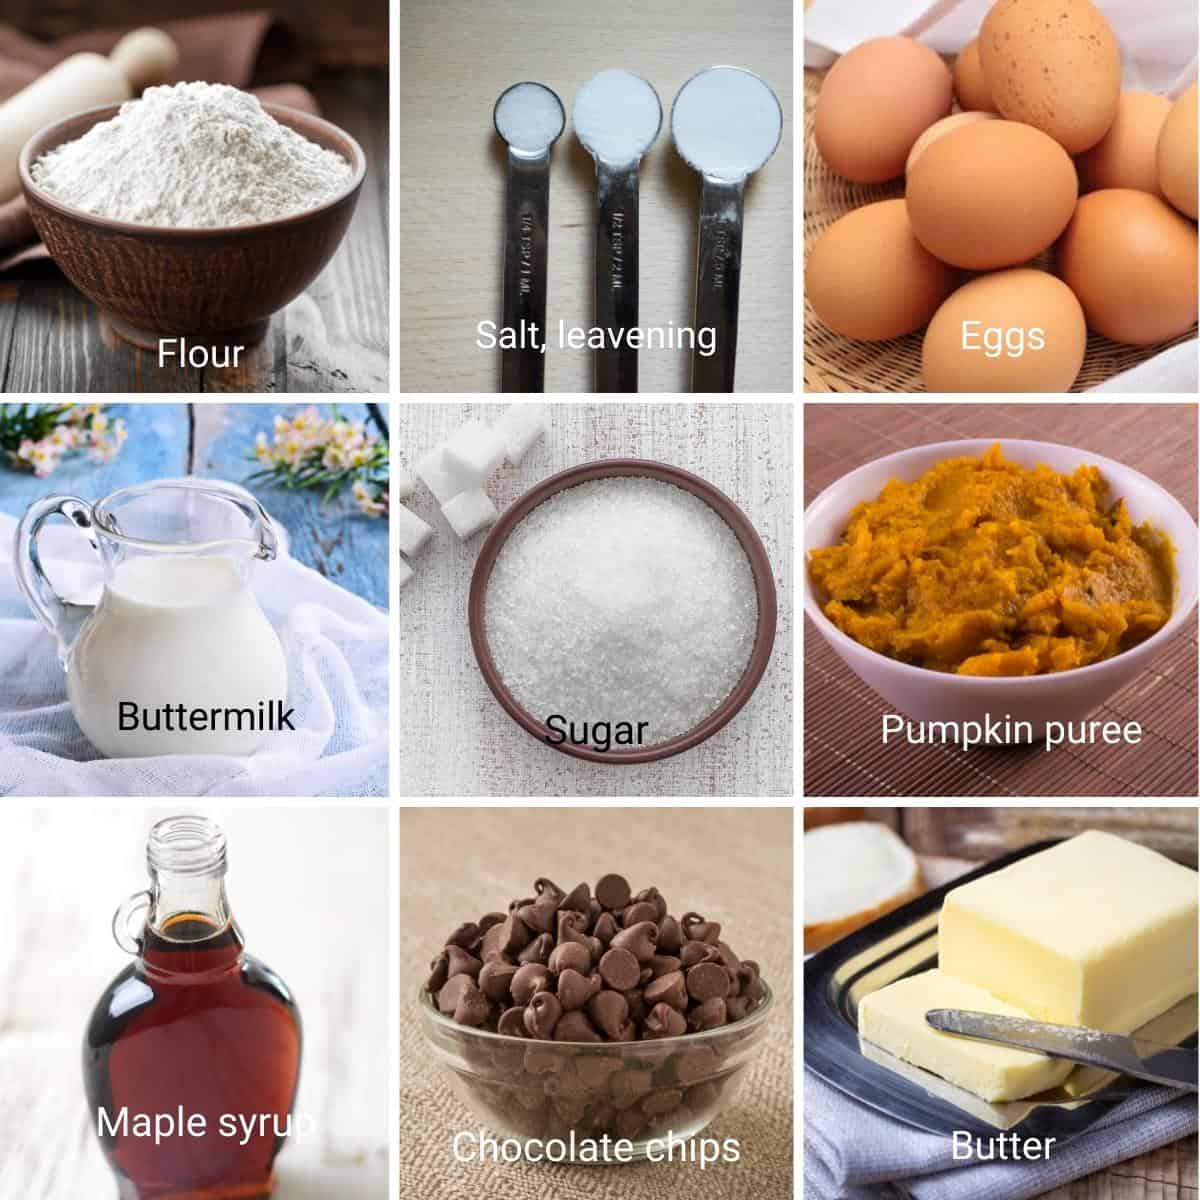 Ingredients for making pancakes.